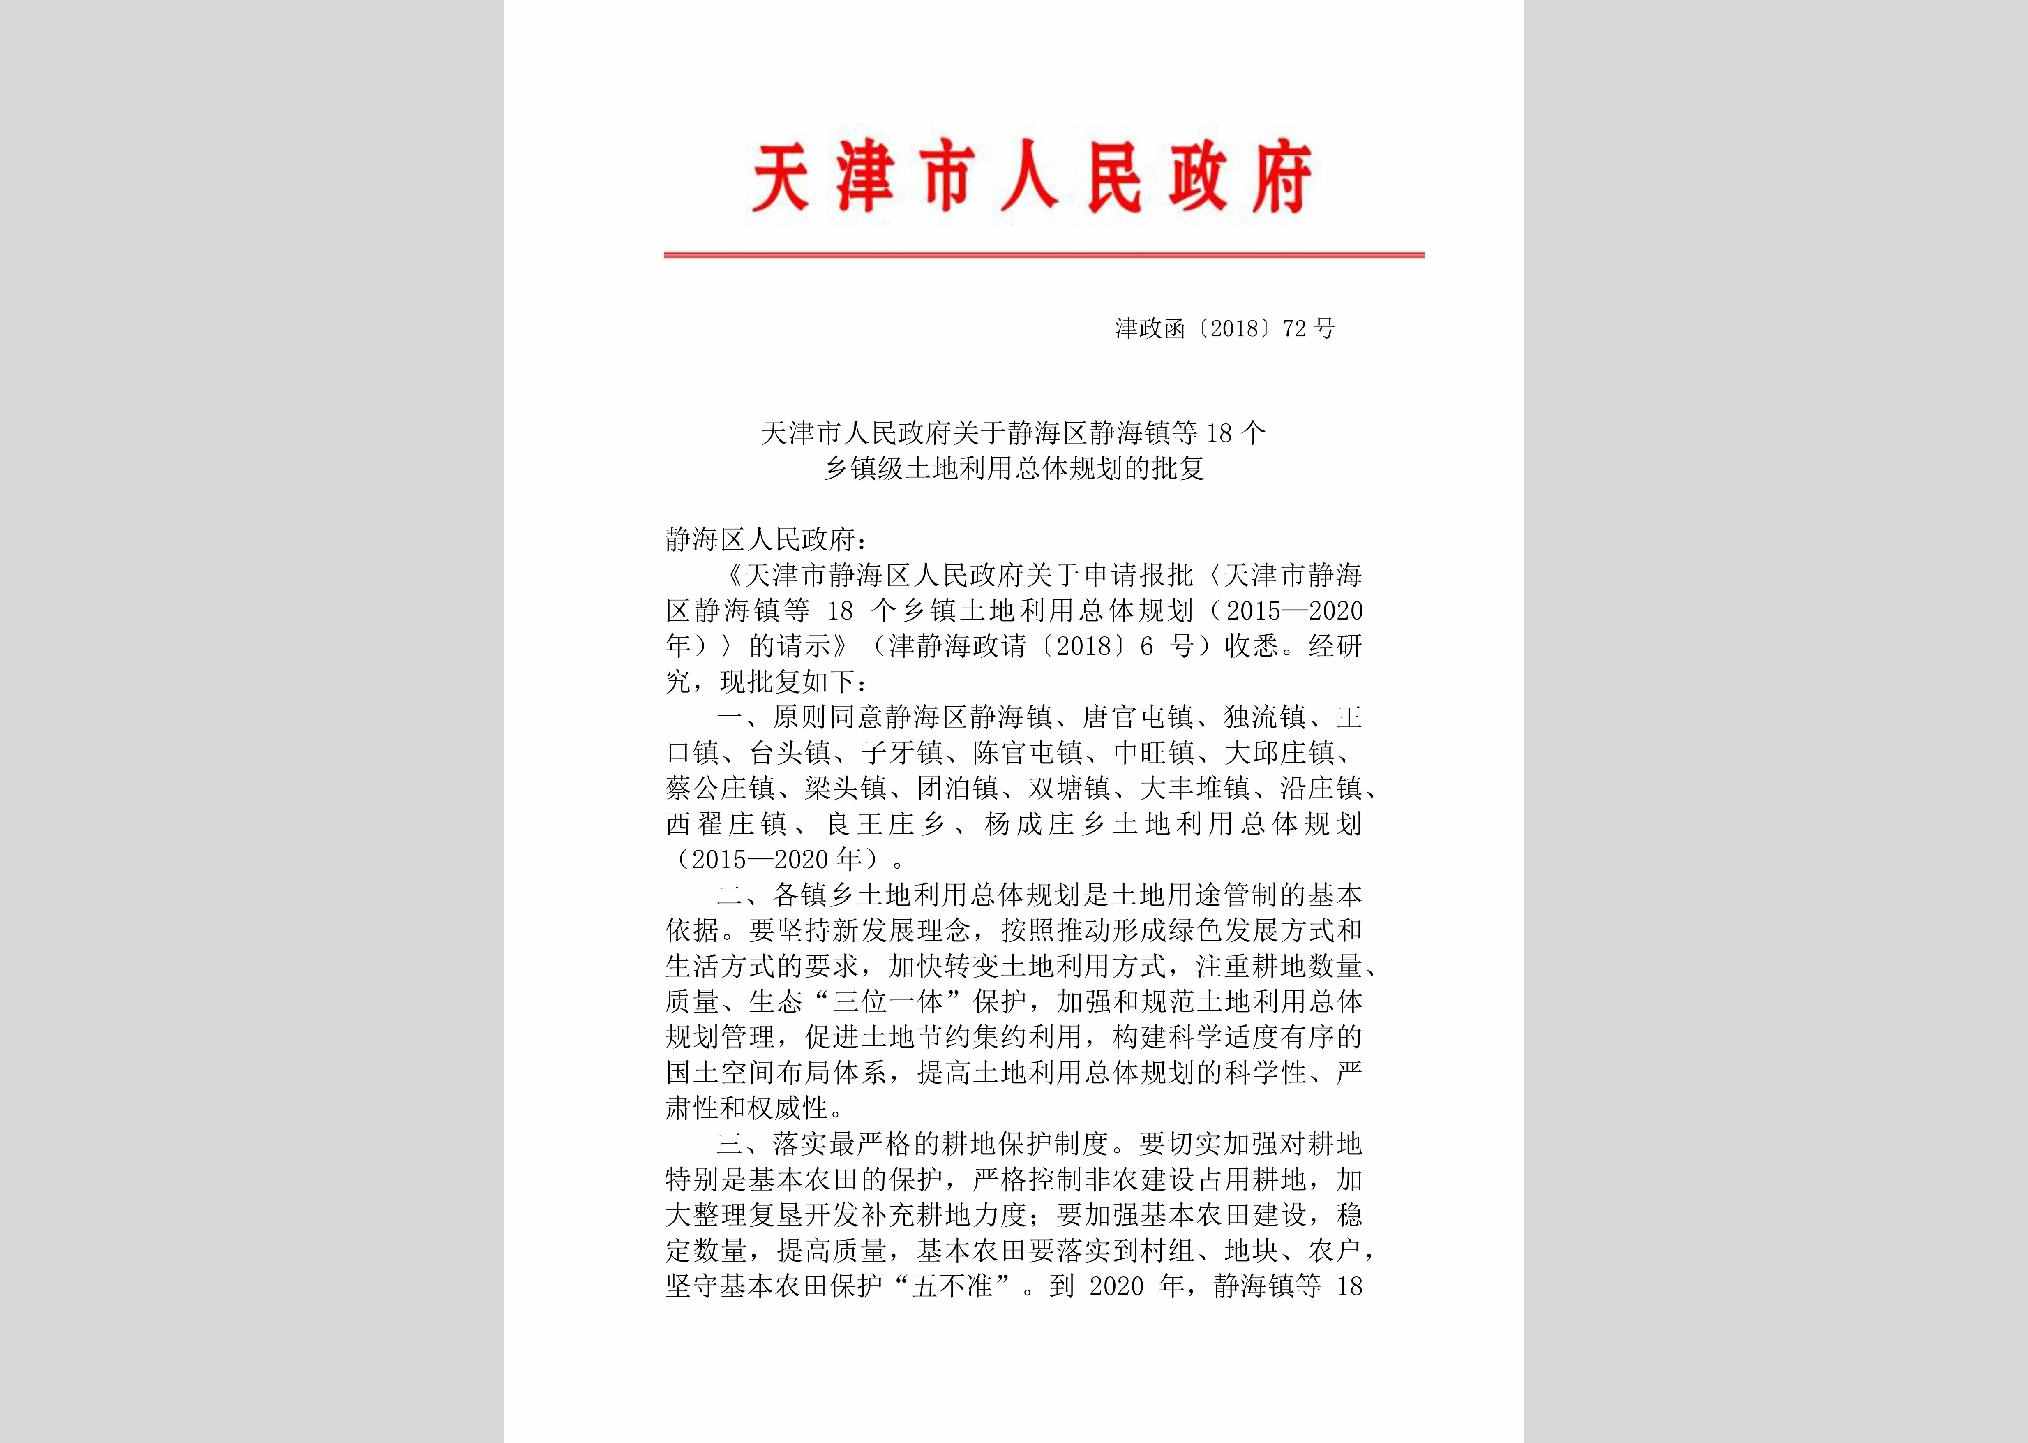 津政函[2018]72号：天津市人民政府关于静海区静海镇等18个乡镇级土地利用总体规划的批复